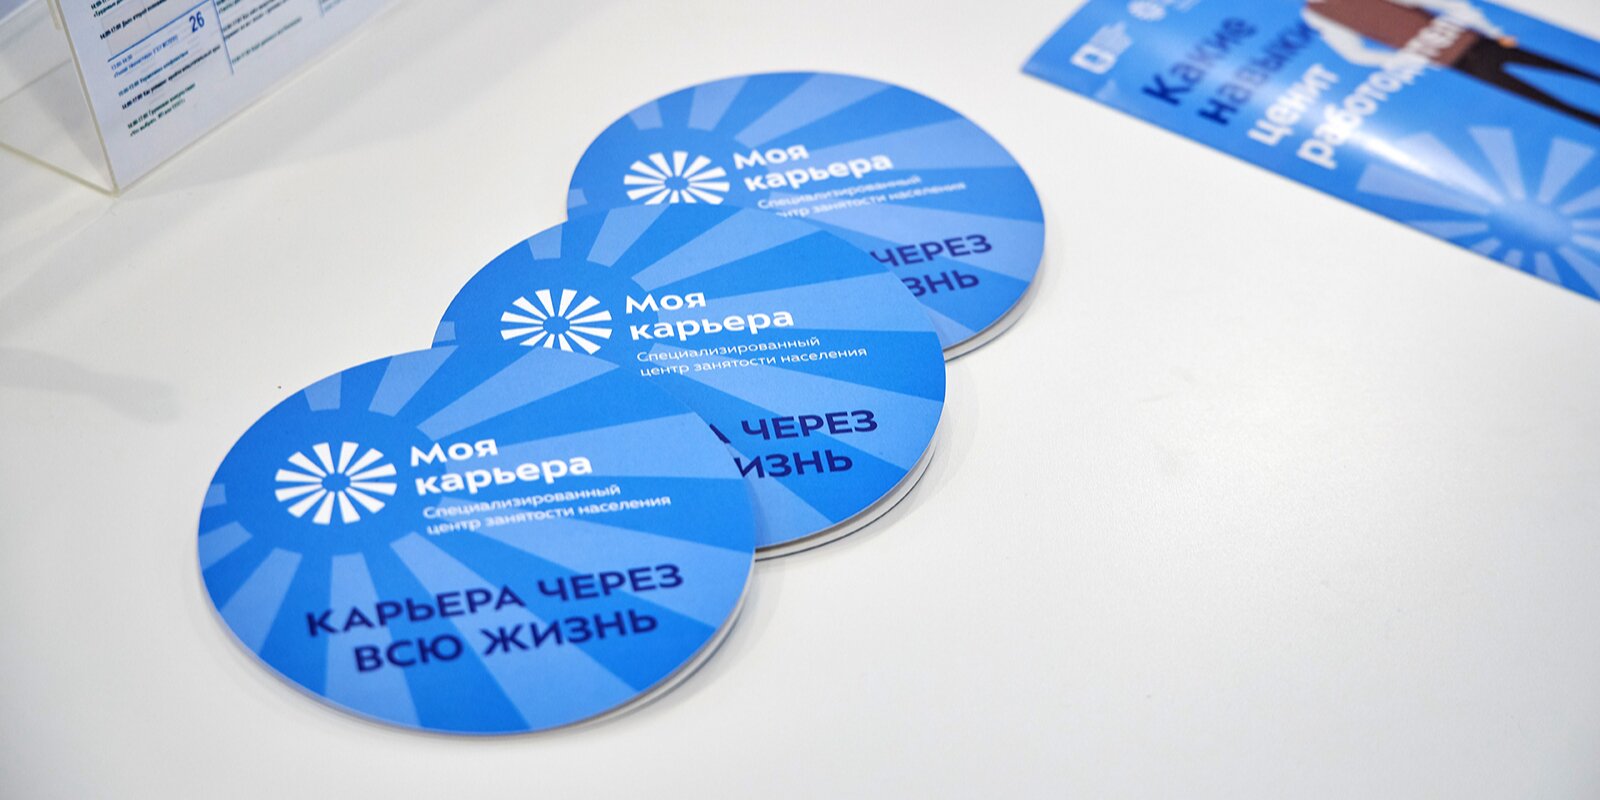 Семинары мастерской предпринимательства и самозанятости состоятся в центре «Моя карьера»». Фото: сайт мэра Москвы